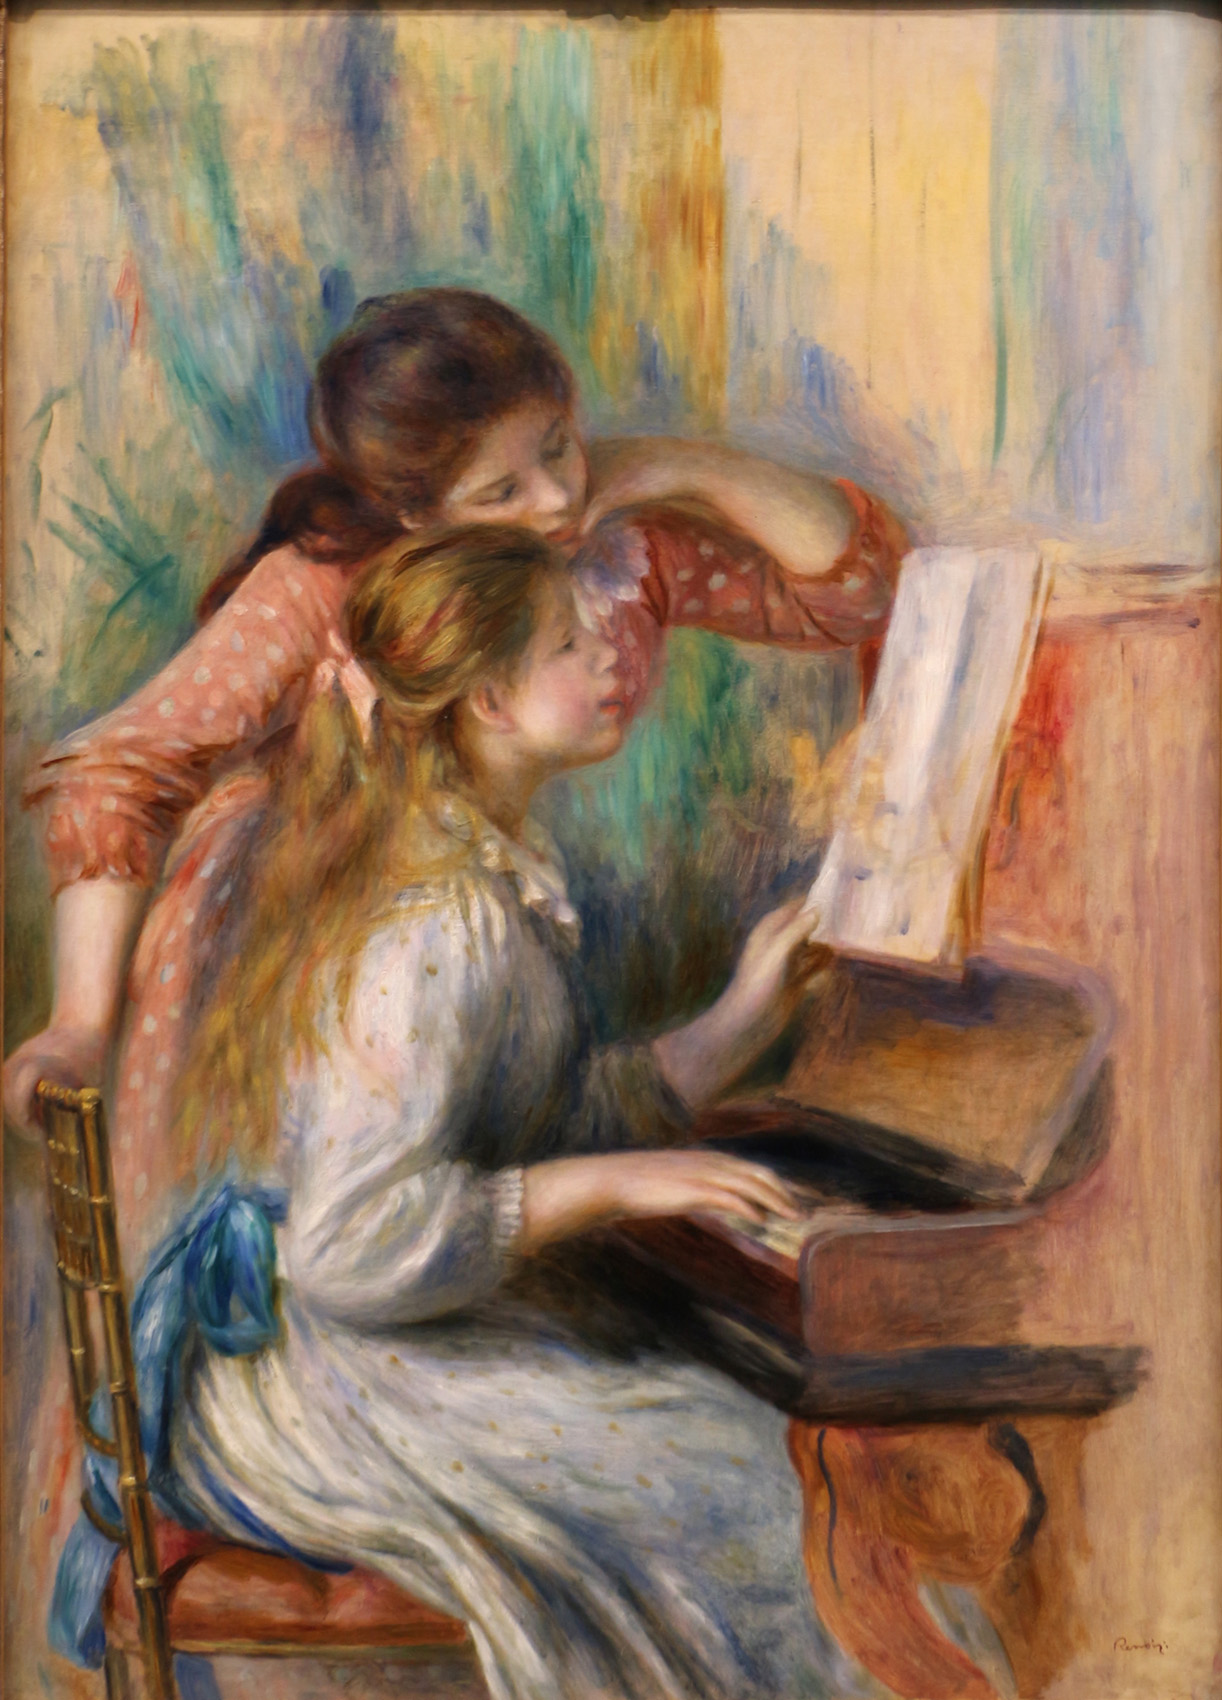 ルノワール作 ピアノを弾く少女たち 楽興の時 と共に クラシック音楽とアート